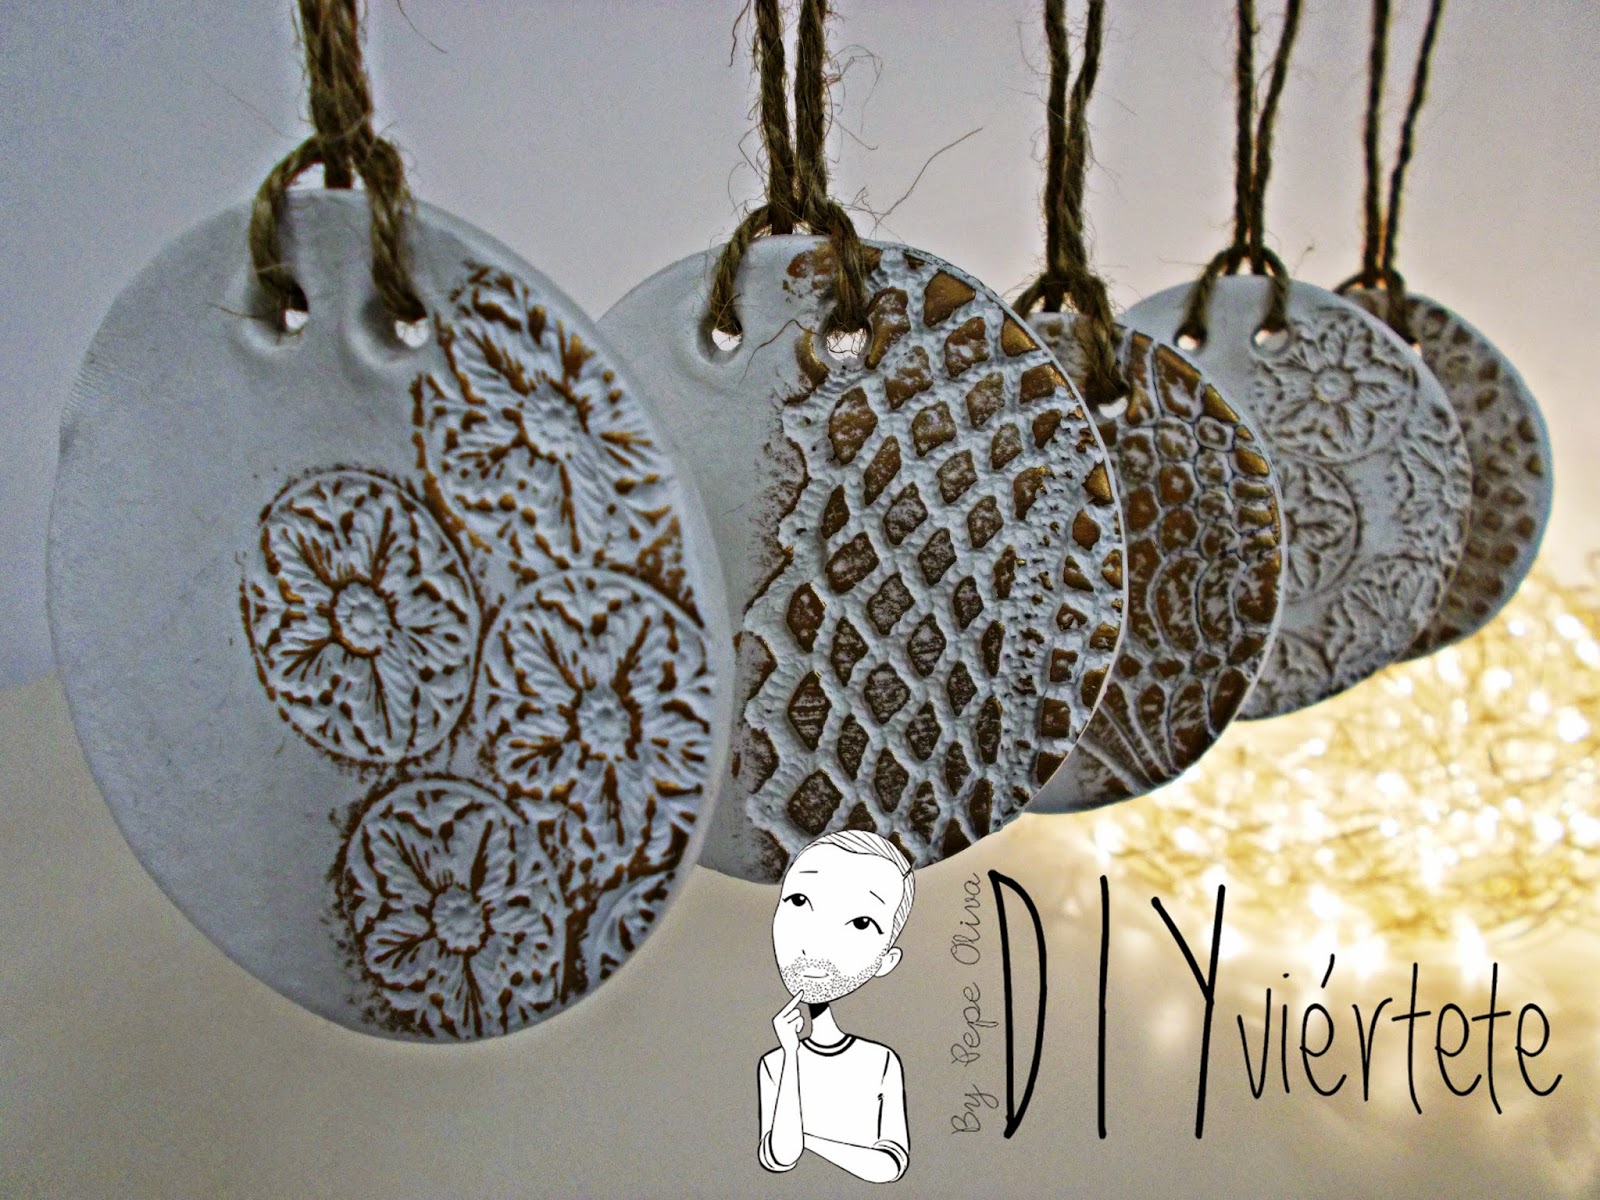 DIY-adorno navideño-ideas decoración-pasta de modelar-porcelana fria-fimo-arcilla polimérica-encaje-dorado-Navidad 1